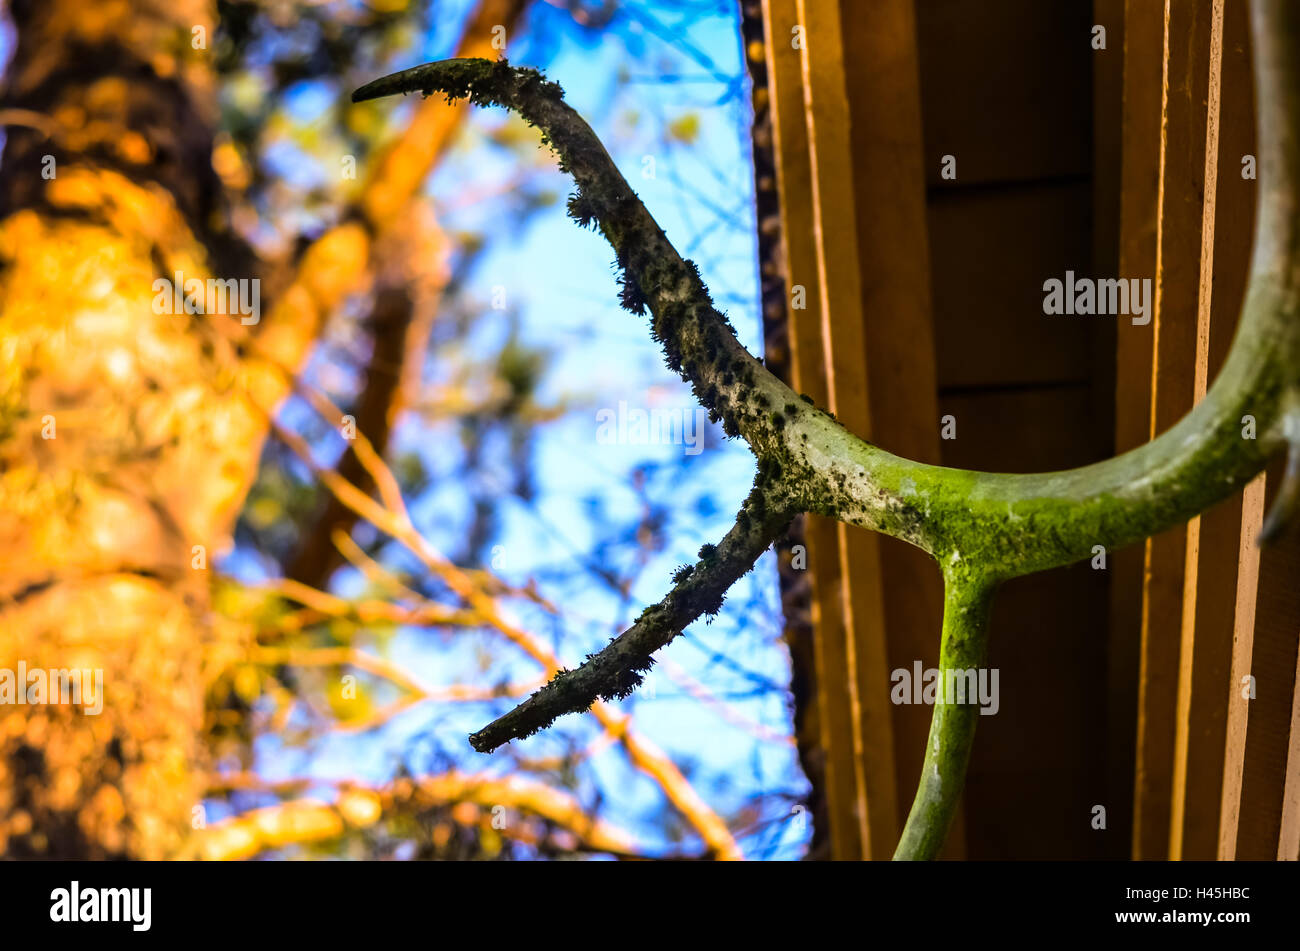 Crecido cuernos de ciervo con moss colgando de cabaña de madera Foto de stock